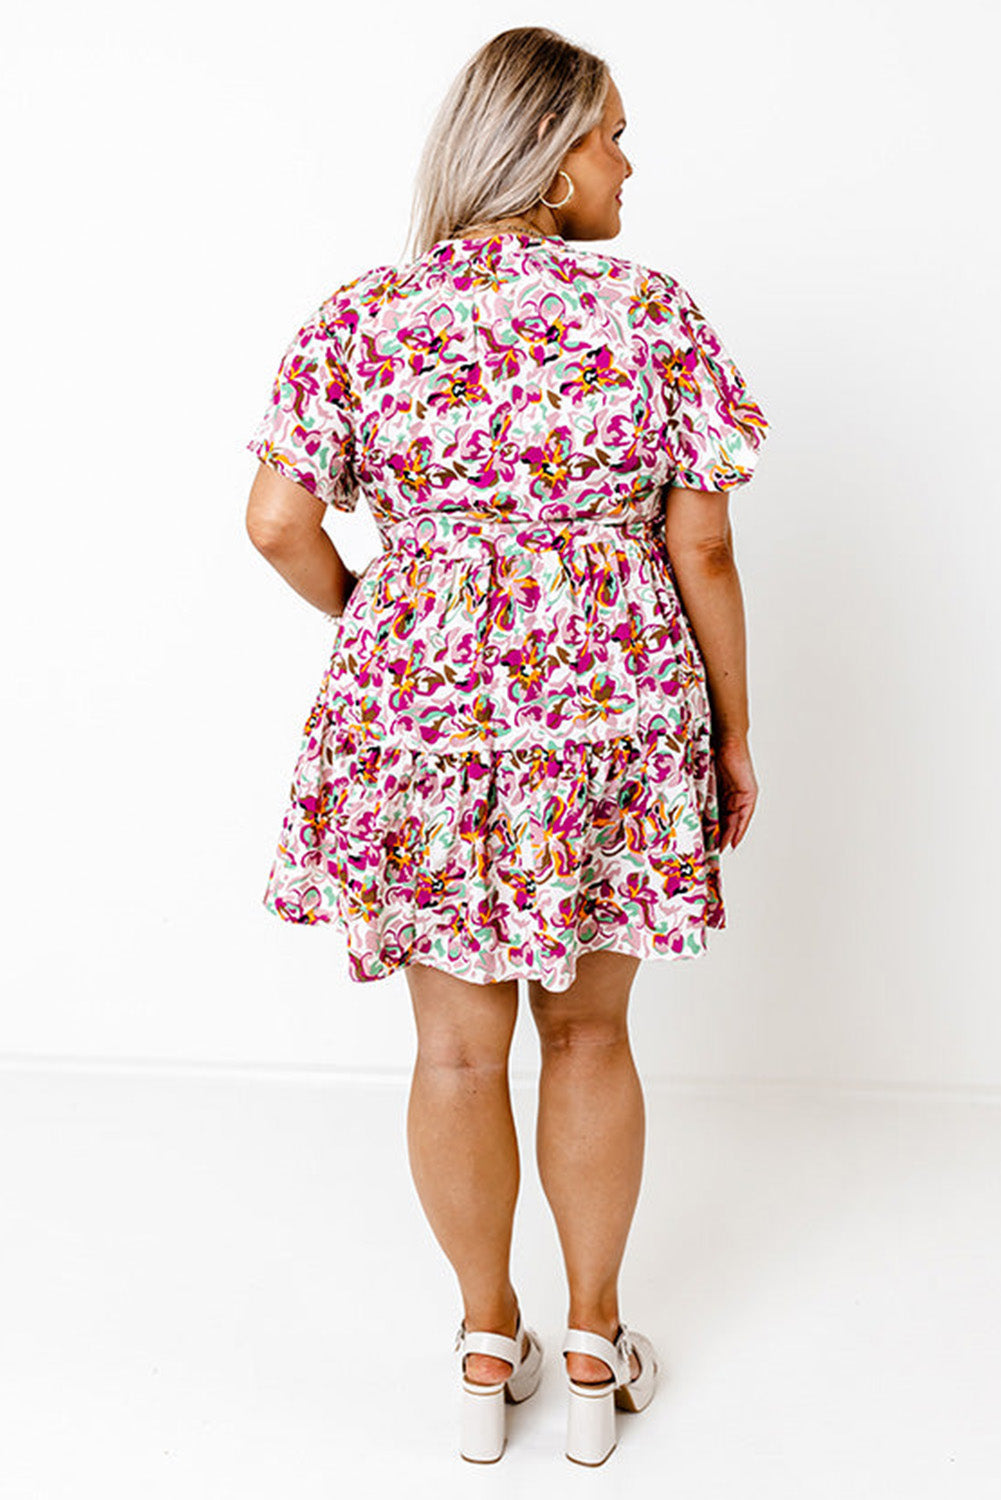 Multicolor Plus Size Floral Print Short Sleeve Ruffle Shift Dress Plus Size JT's Designer Fashion